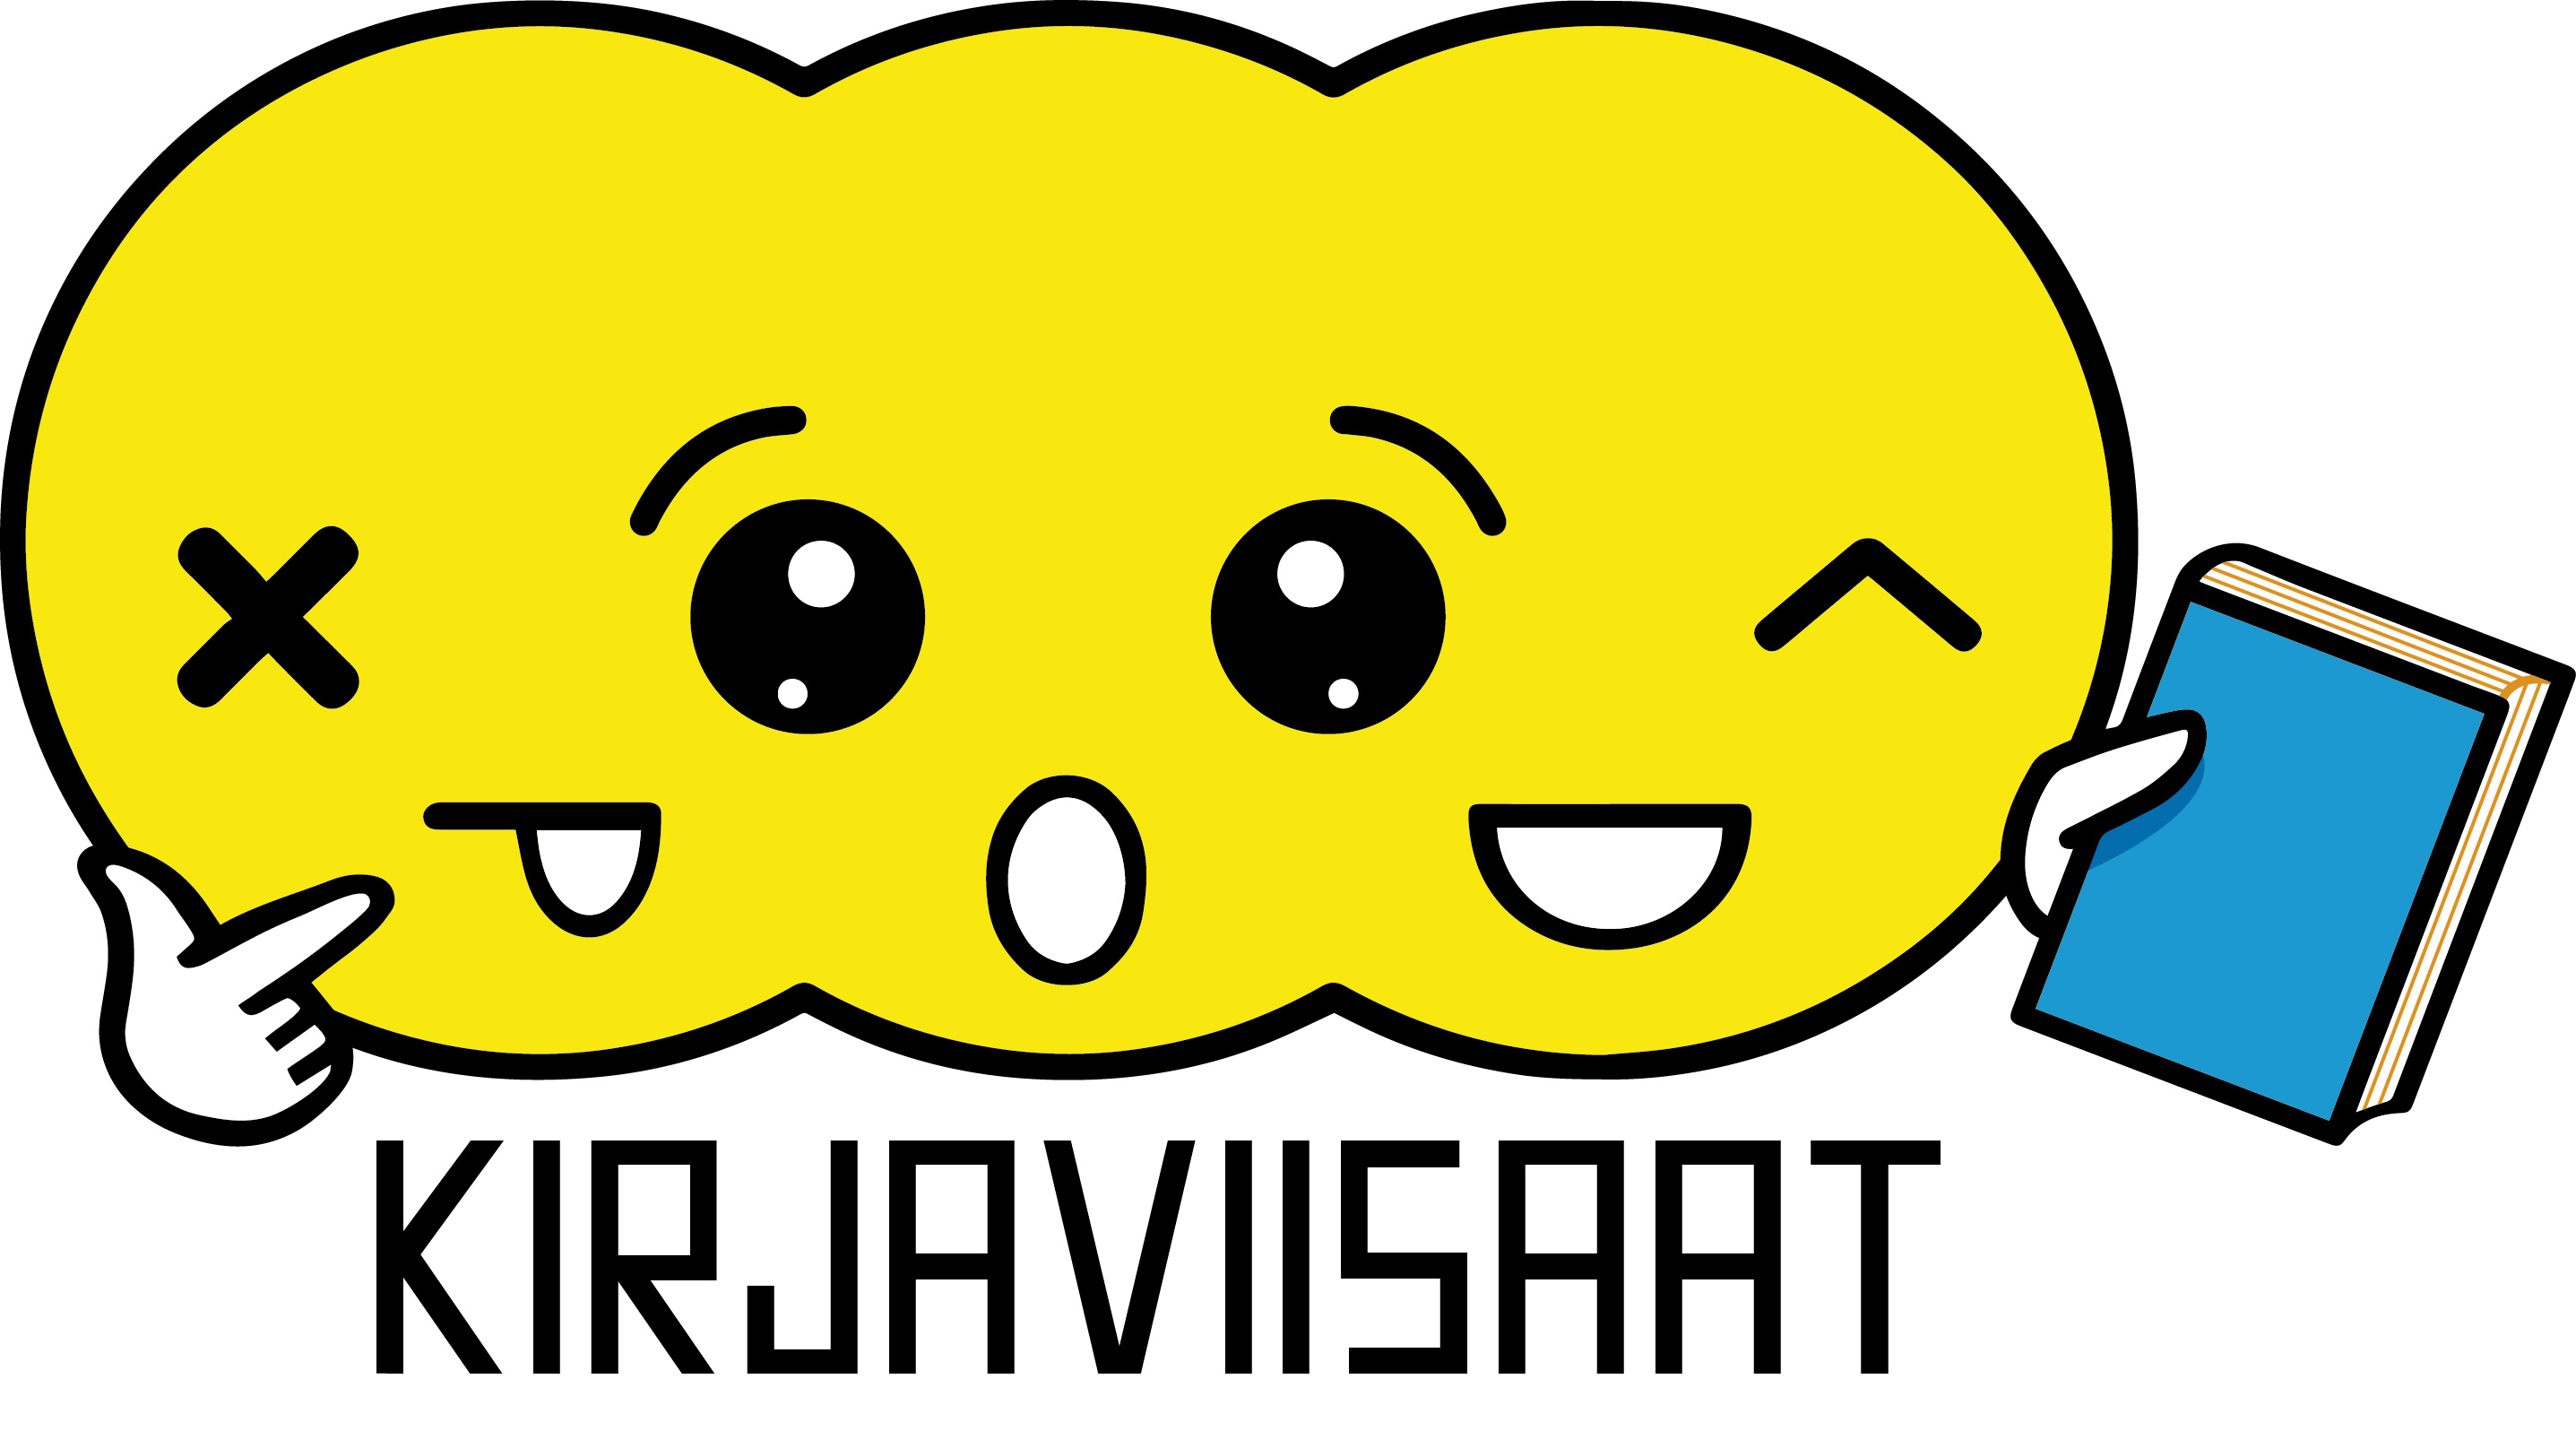 Kirjaviisaat-kilpailun logo.